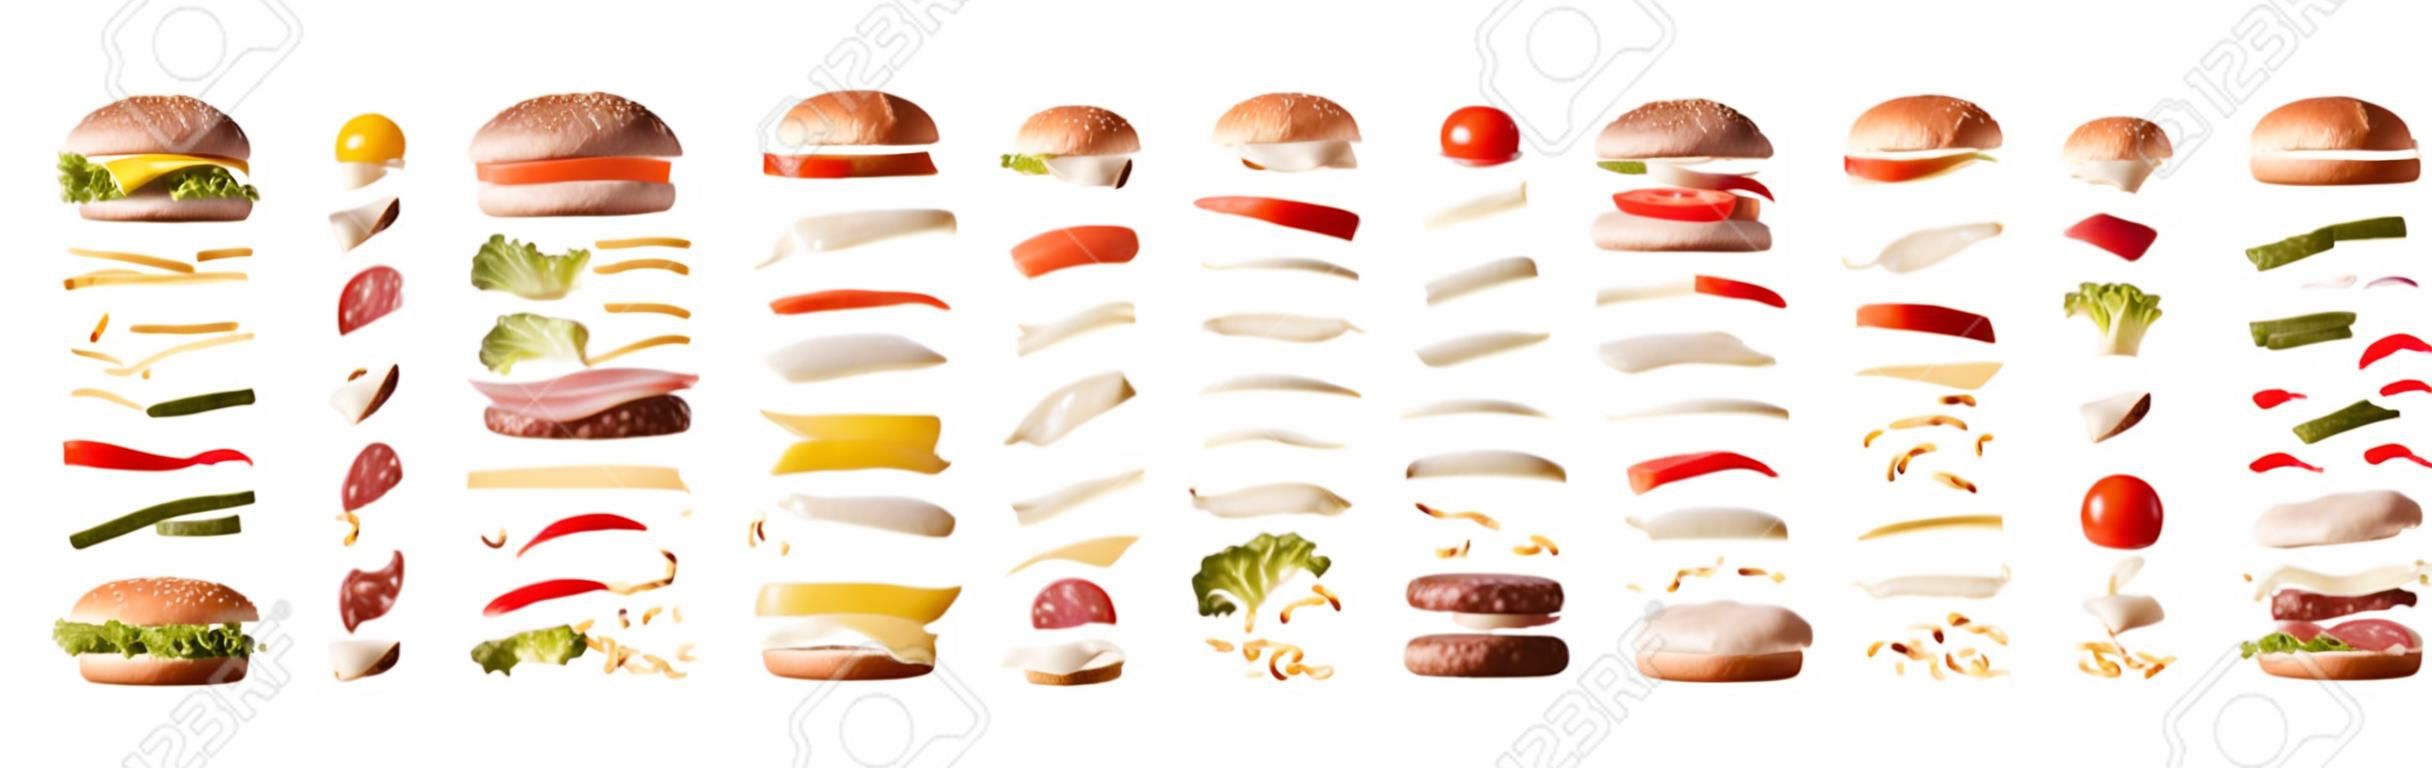 Satz verschiedene Burger mit Zutaten, die durch Schichten auf weißem lokalisiertem Hintergrund getrennt werden. Vorderansicht. Horizontale Komposition.